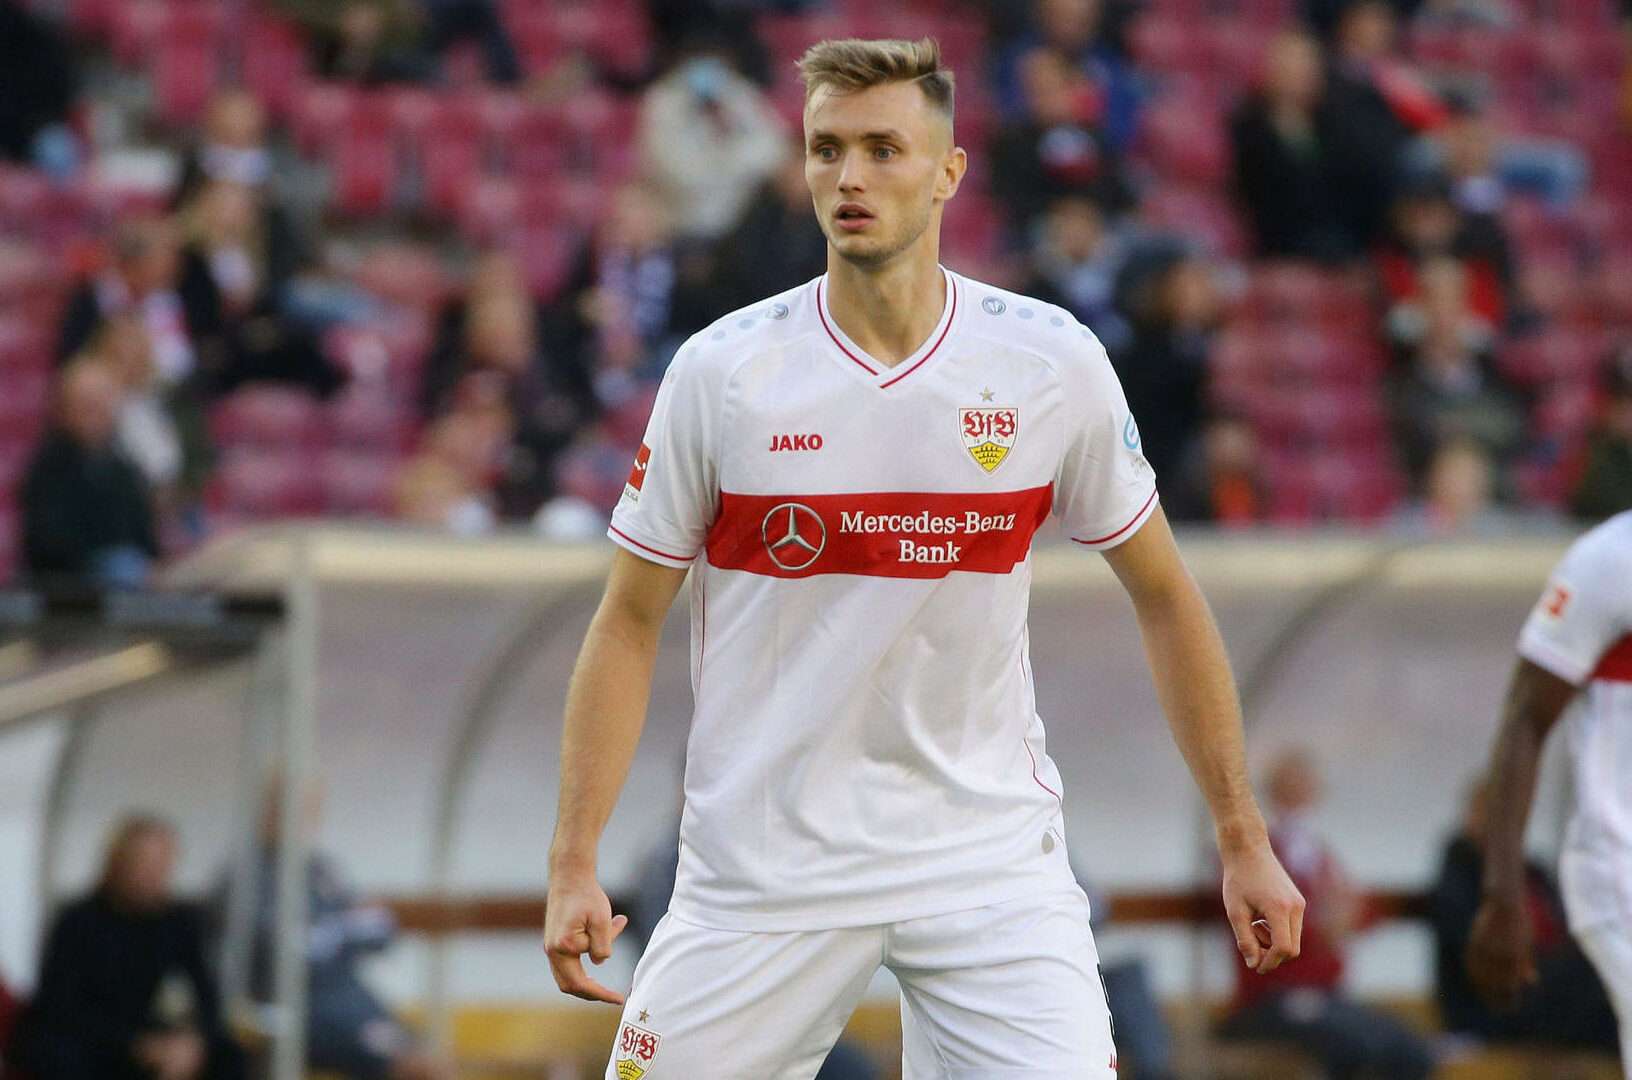 West Ham bets on Austrian striker Sasa Kalajdzic